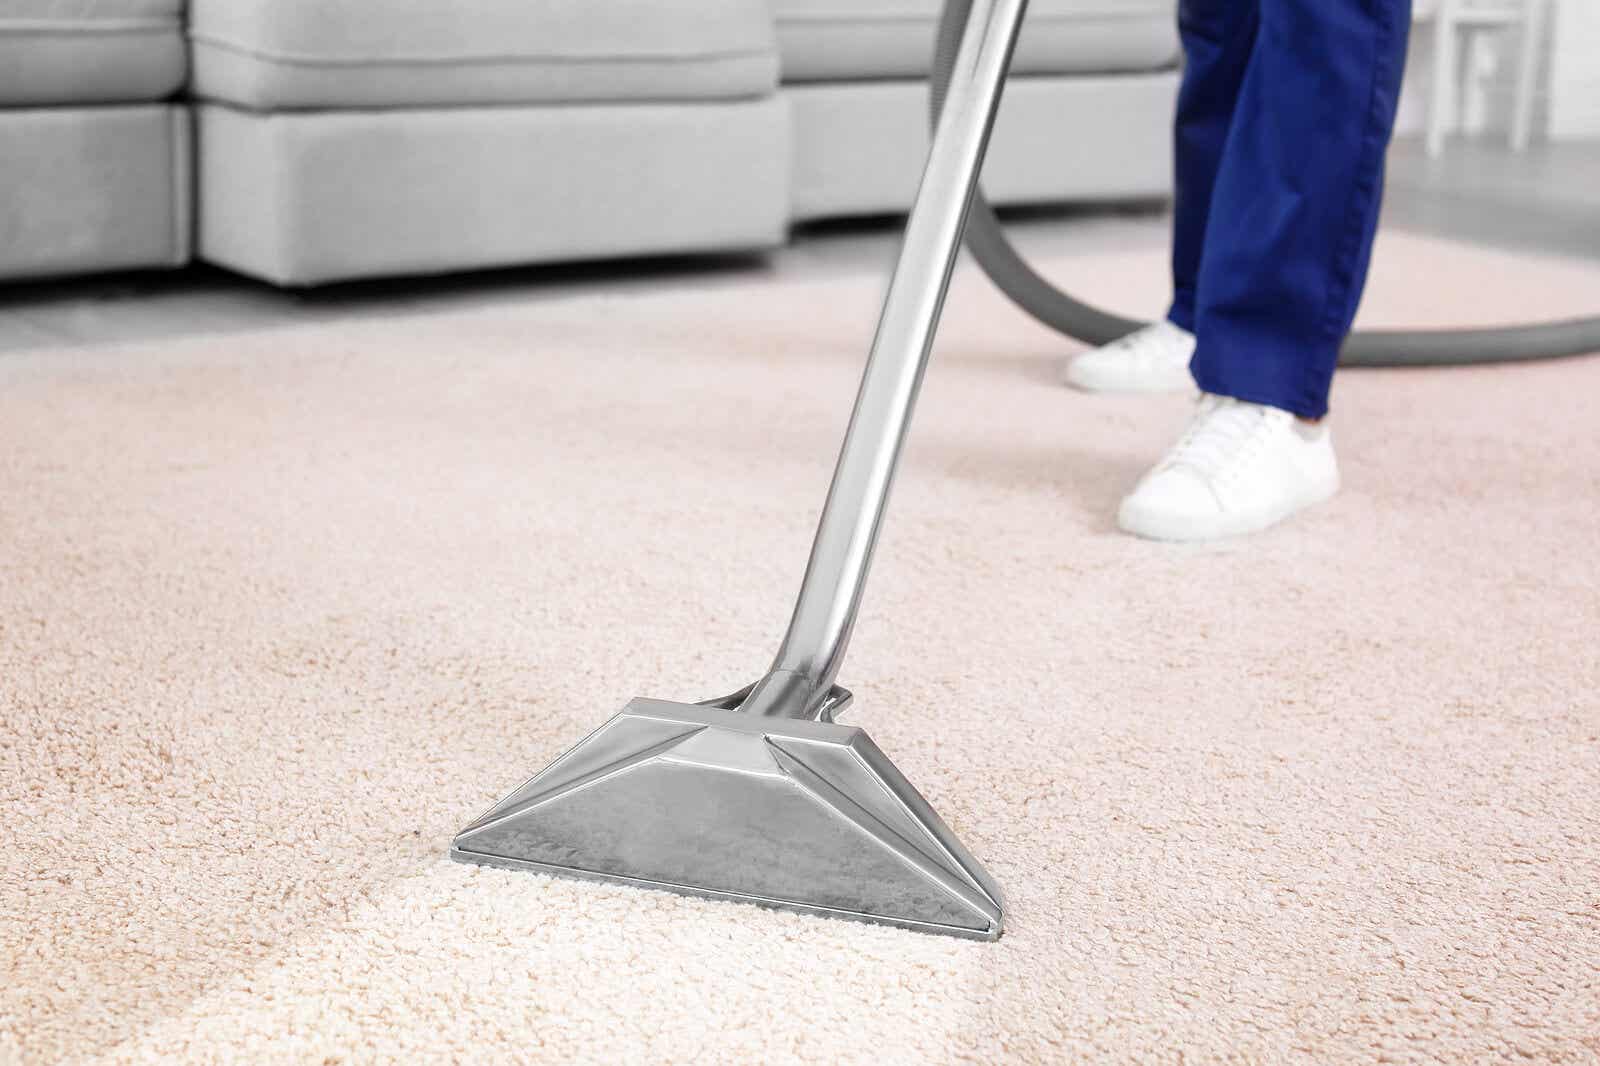 Tener una aspiradora que tenga función de limpiar con vapor puede ser muy útil en la limpieza del hogar.